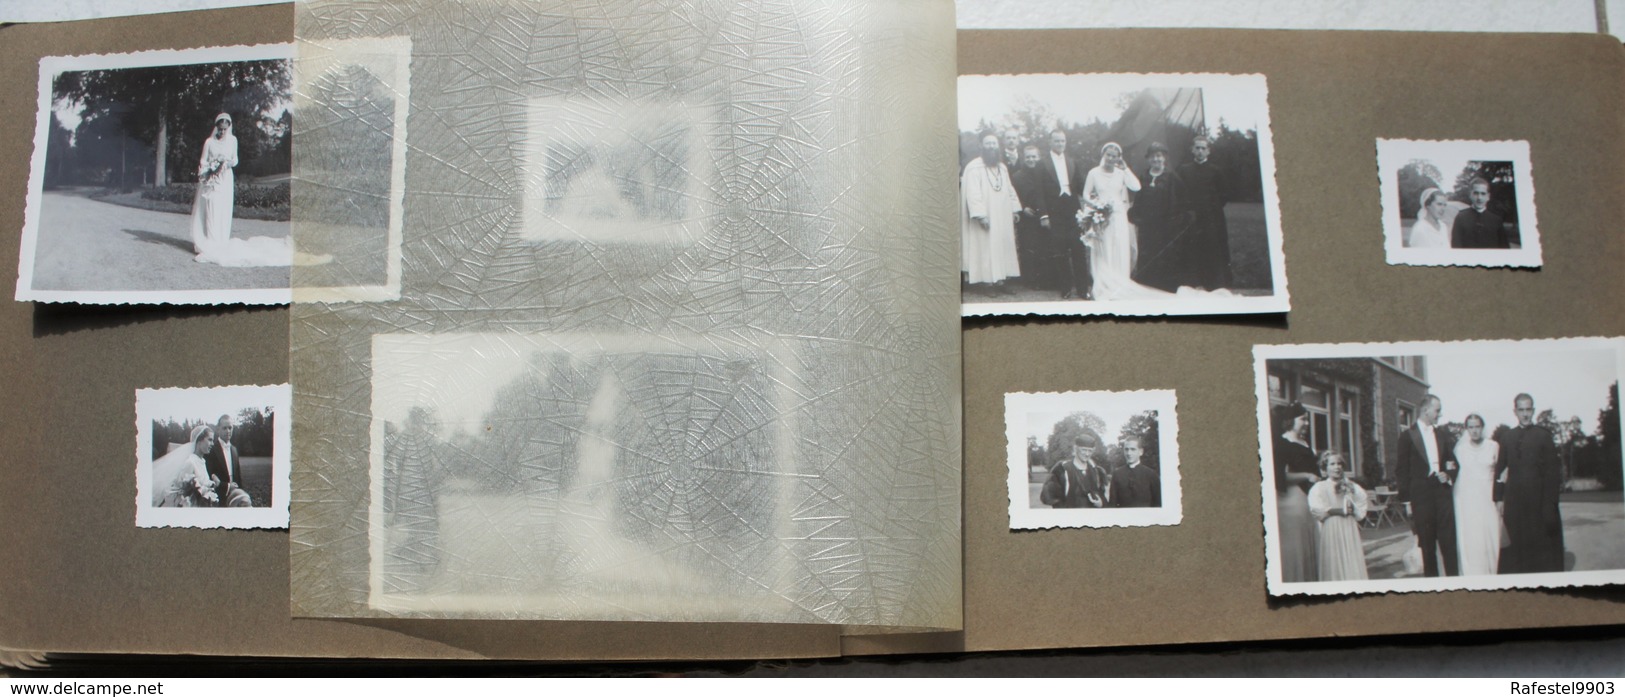 ALBUM 154 photos MARCHE EN FAMENNE 1935 Mariage C van der Straeten Waillet Ordination Abbé Namur LE PLANTIS Noblesse